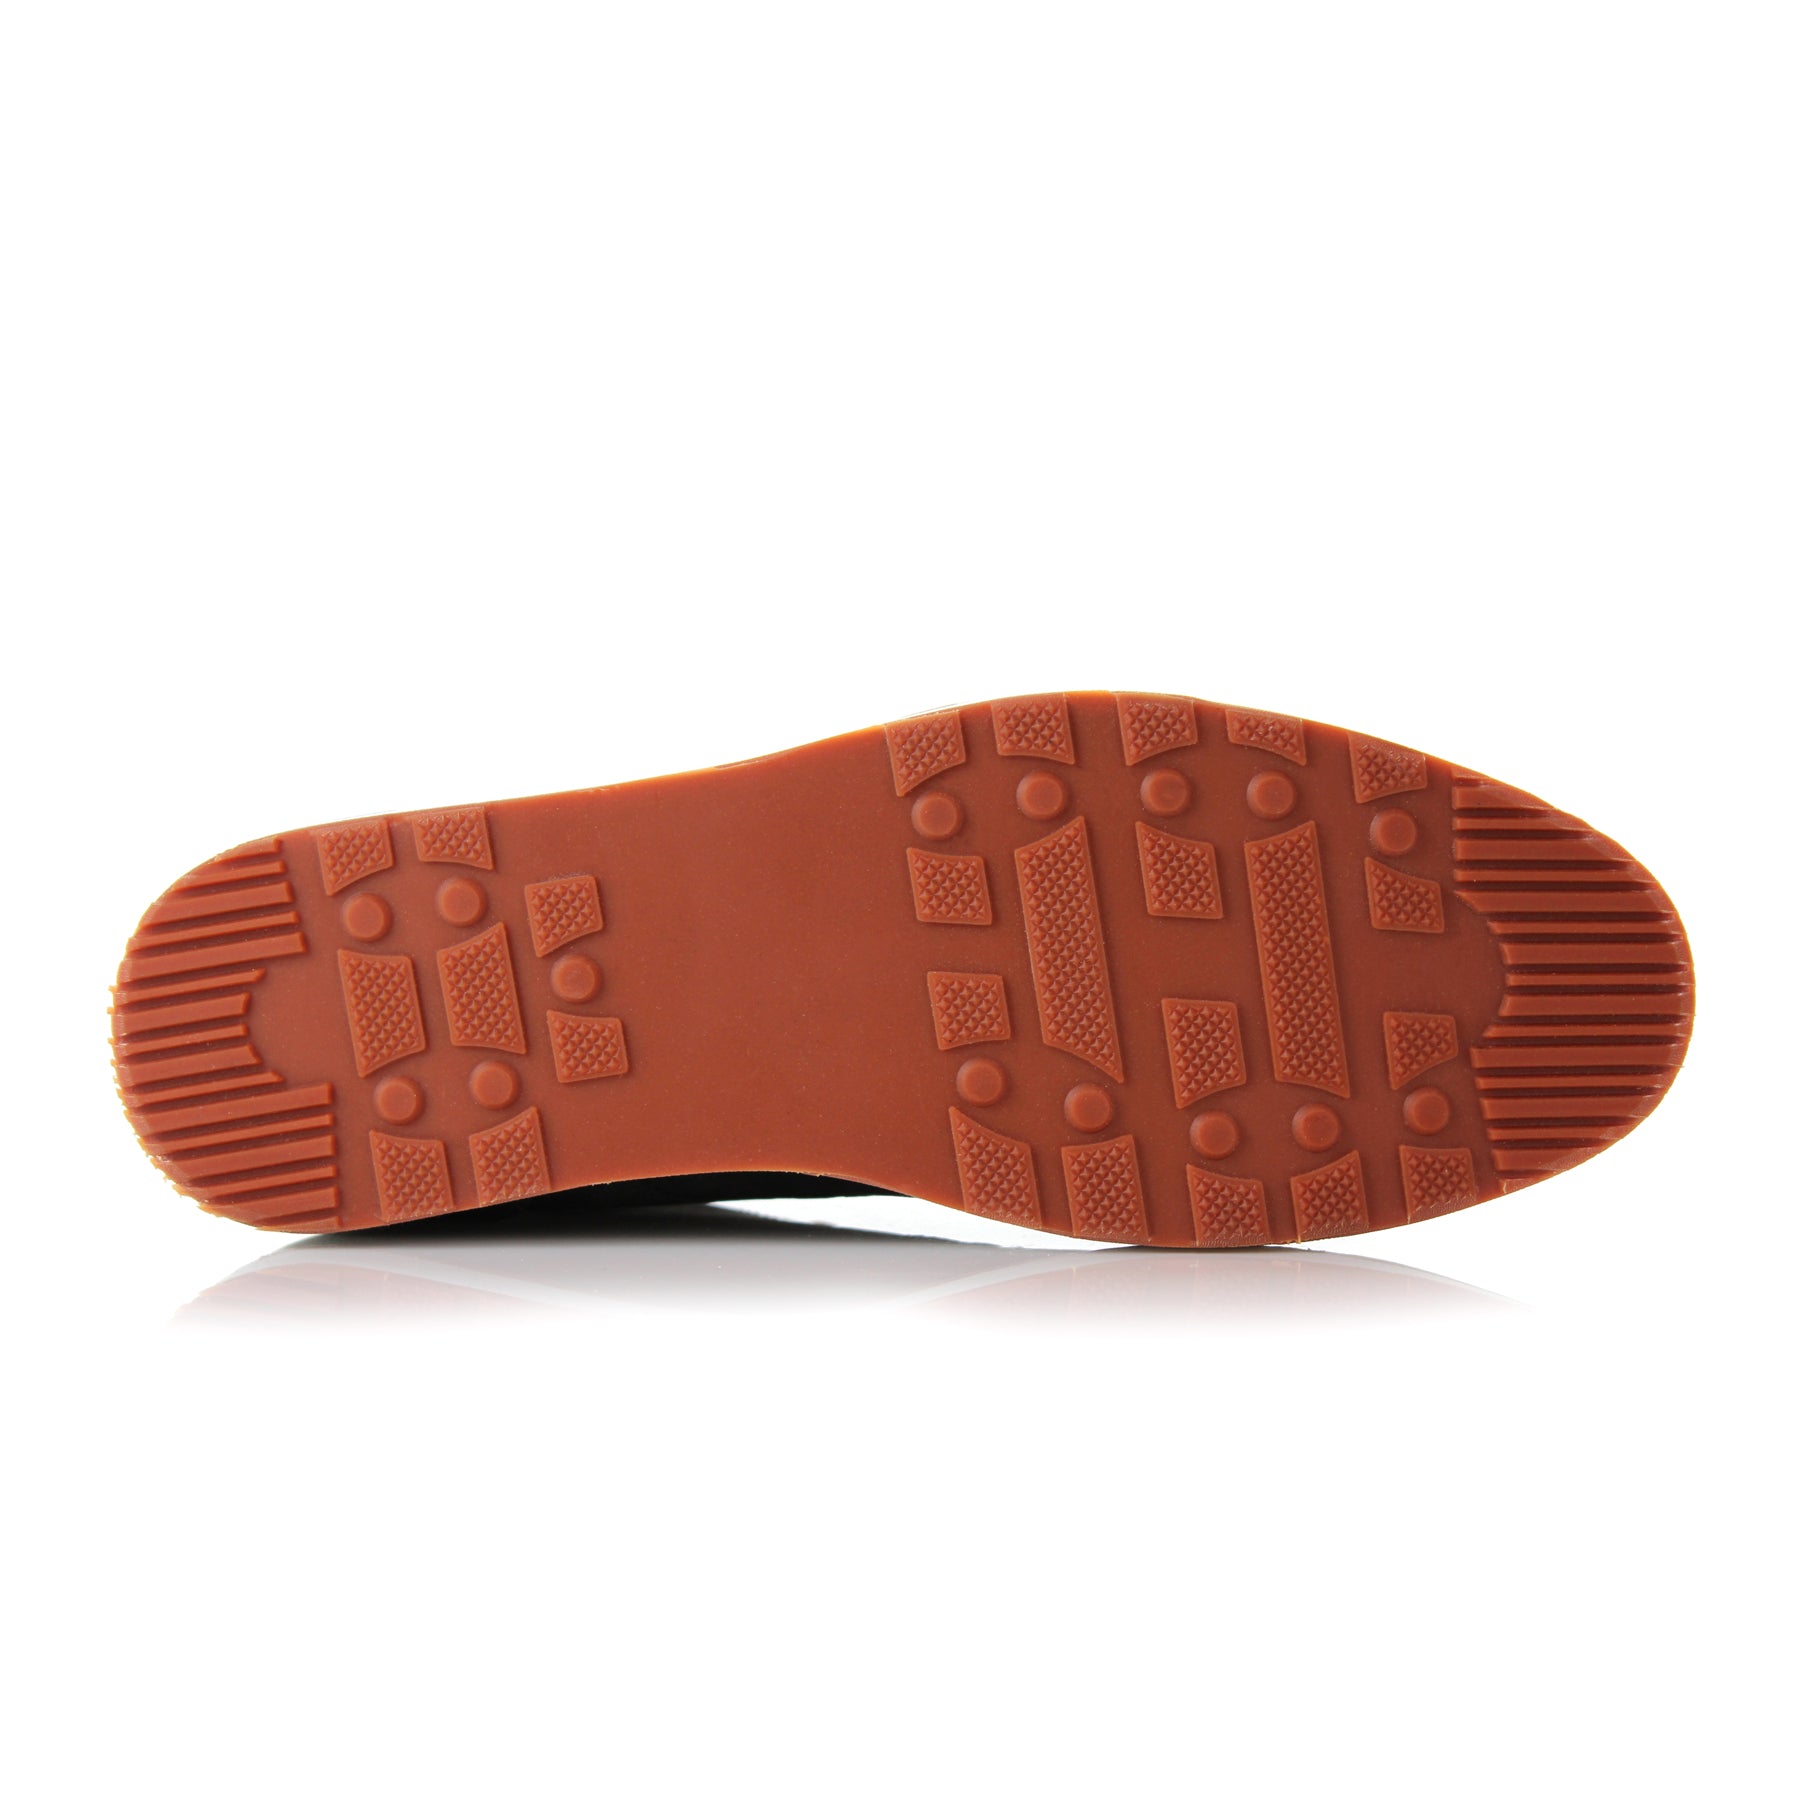 Suede Sneakers | Jax by Ferro Aldo | Conal Footwear | Bottom Sole Angle View